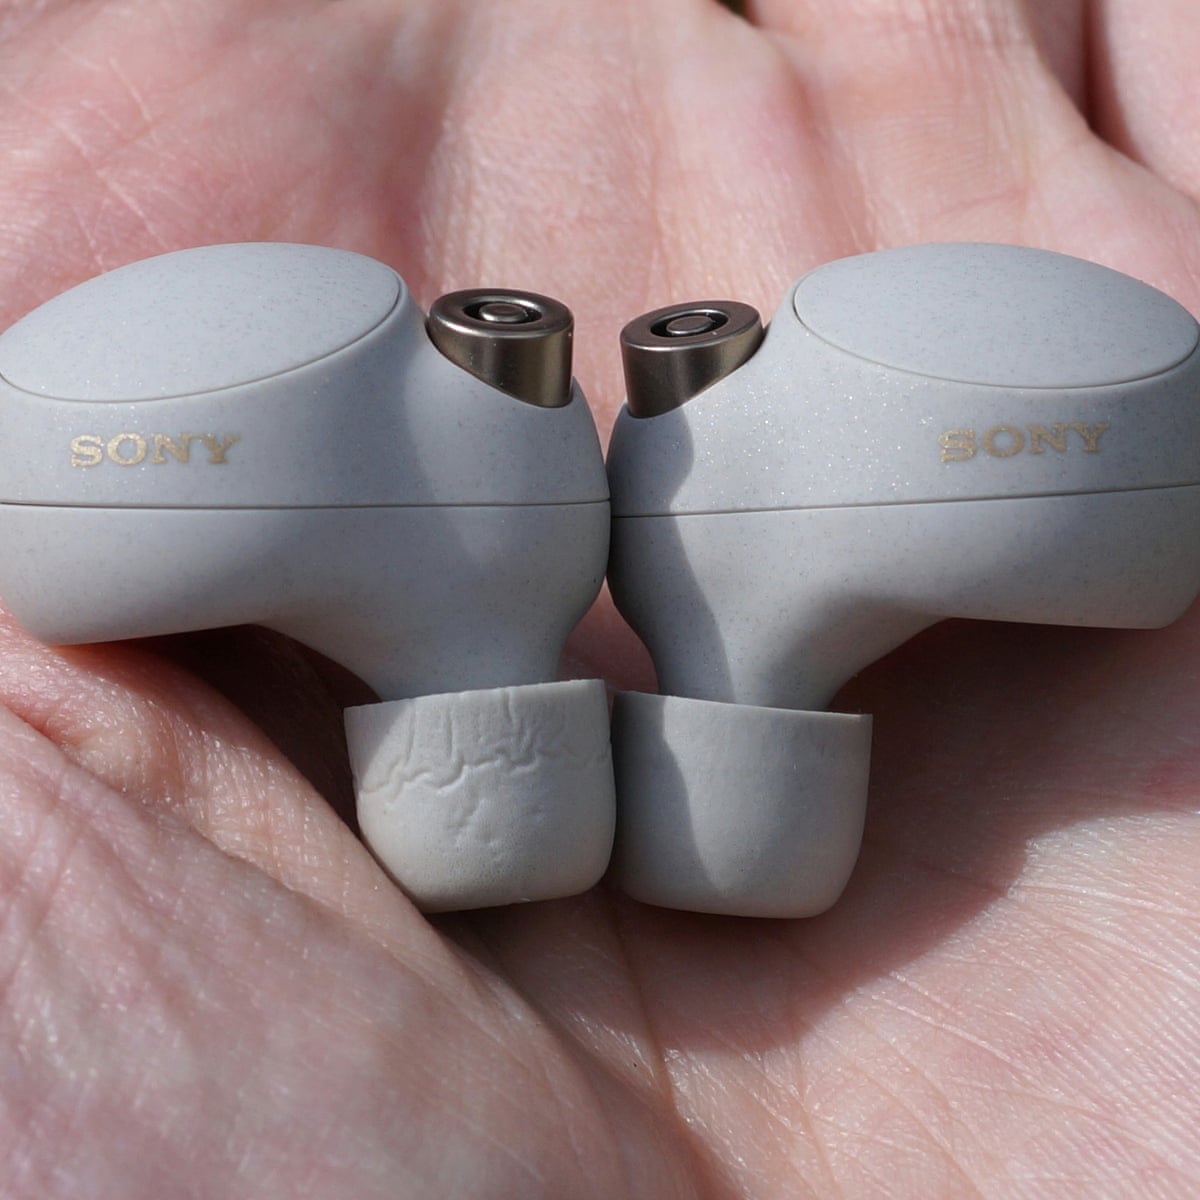 Sony xm4 earbuds